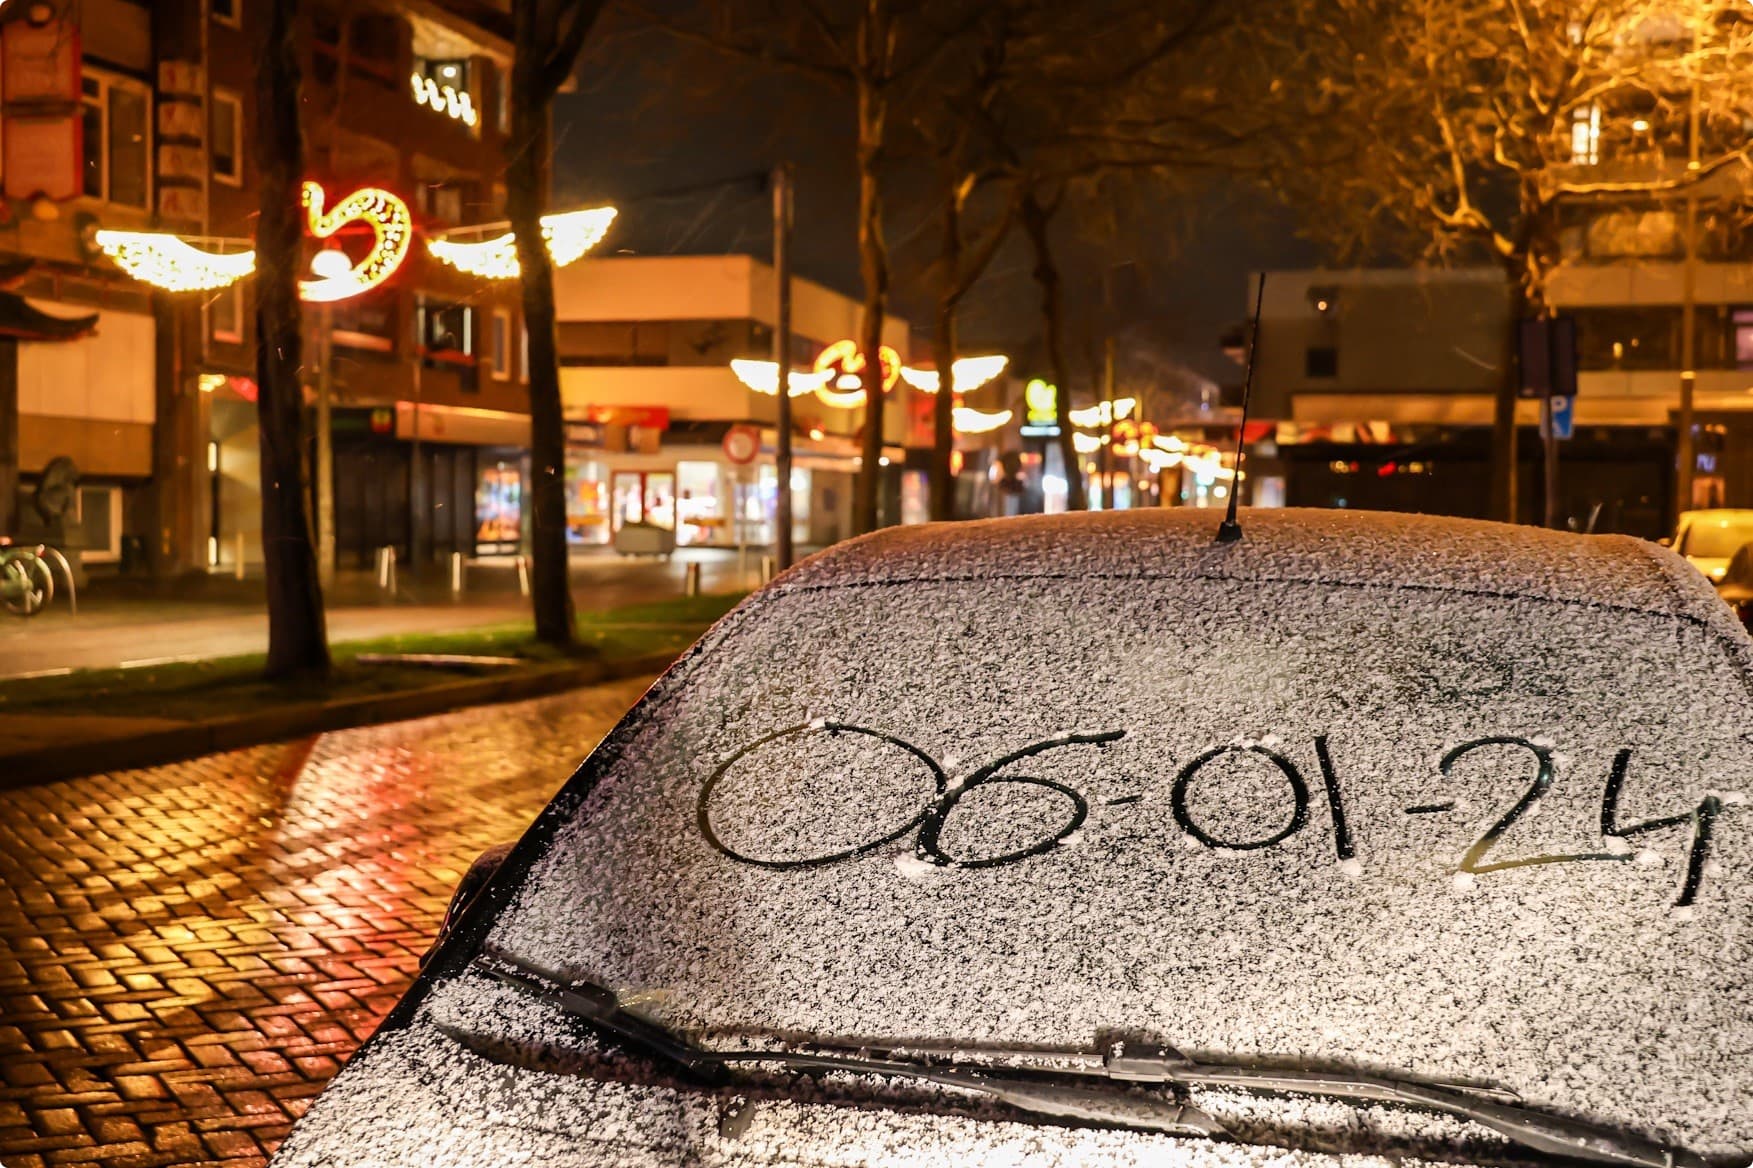 Een auto in Heerenveen heeft een klein laagje sneeuw. Beeld: Noormannen